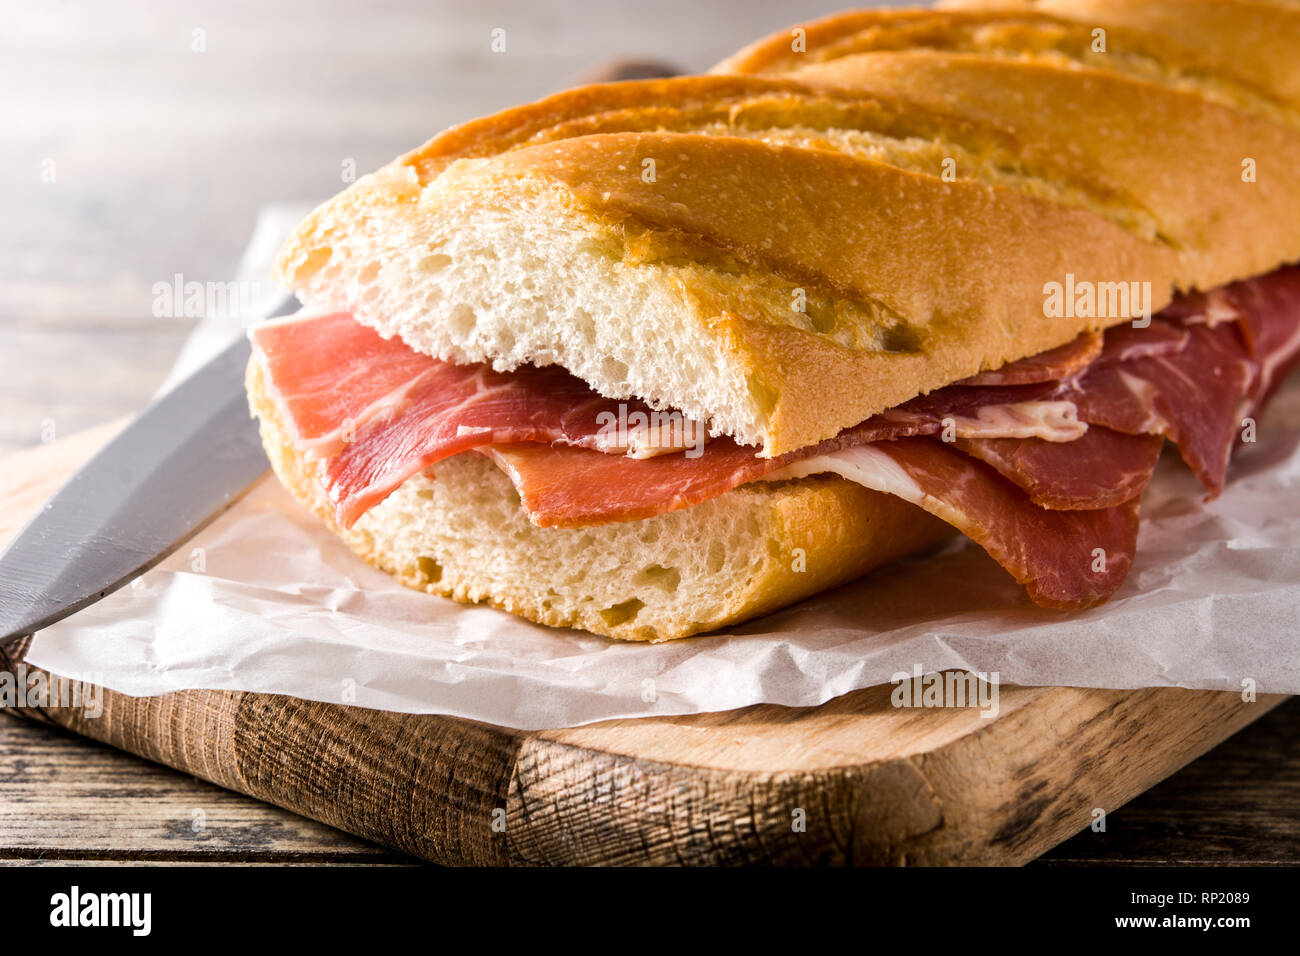 Sandwich au jambon serrano espagnol sur table en bois Banque D'Images